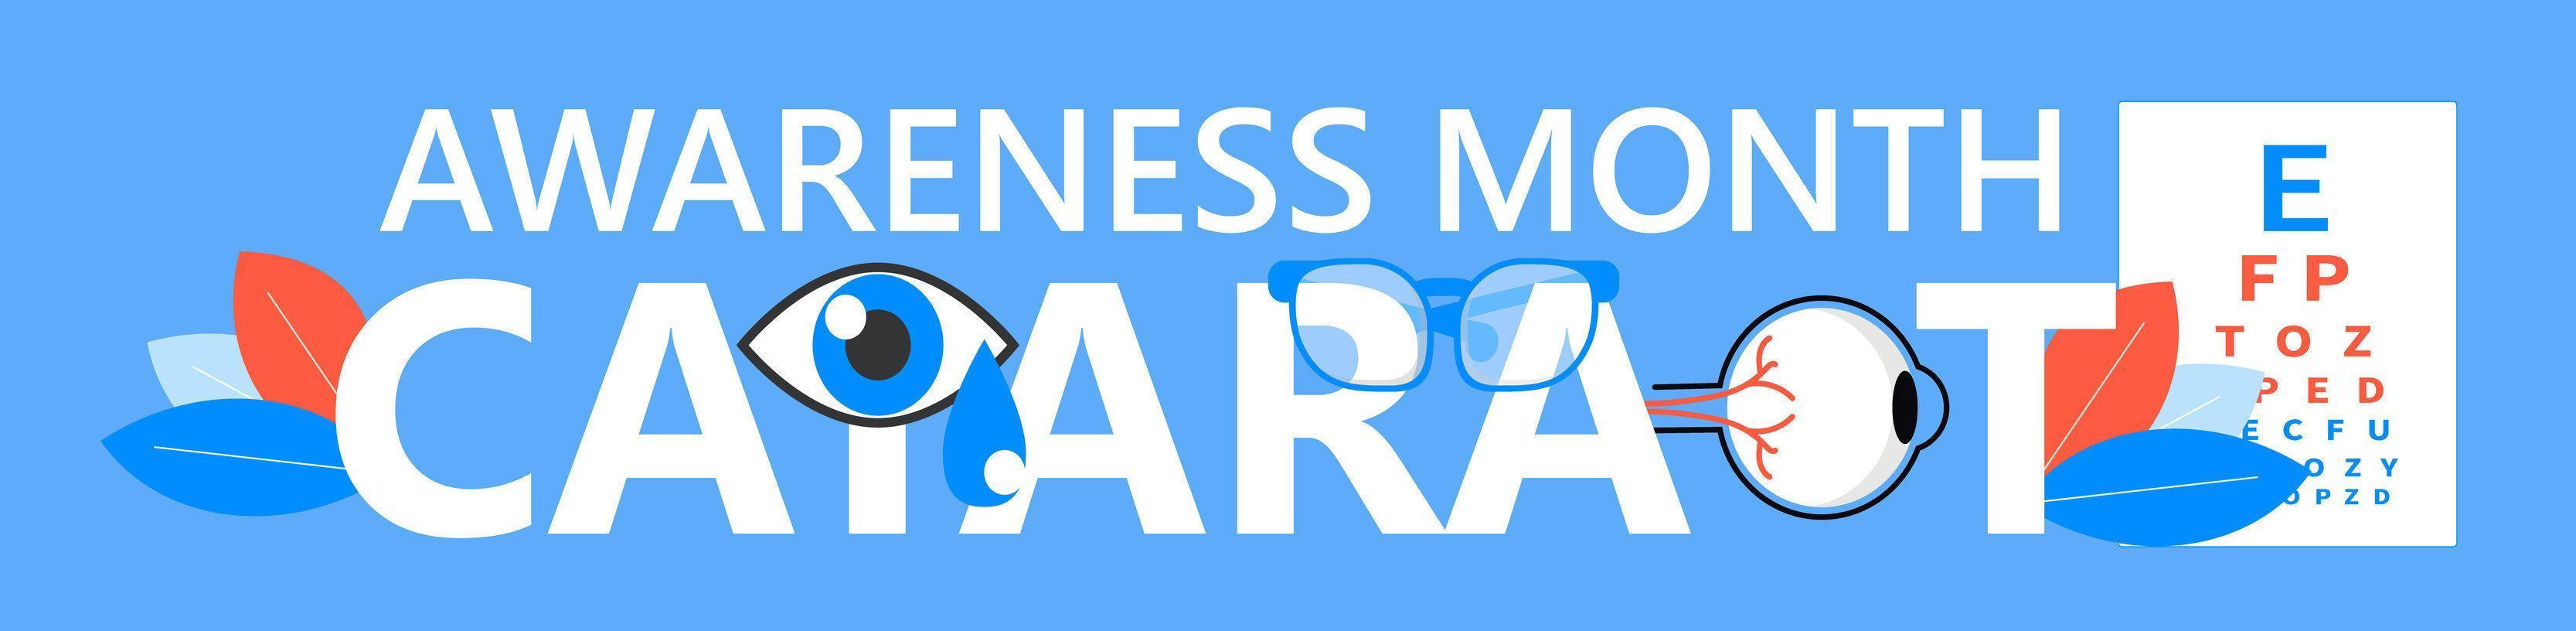 Im Juni wird der Cataract Awareness Month gefeiert. Glaukom-Erkrankung und Nephropathie-Probleme. augenarzt-konzeptillustration. Sehtest mit winzigen Personen für Apps vektor